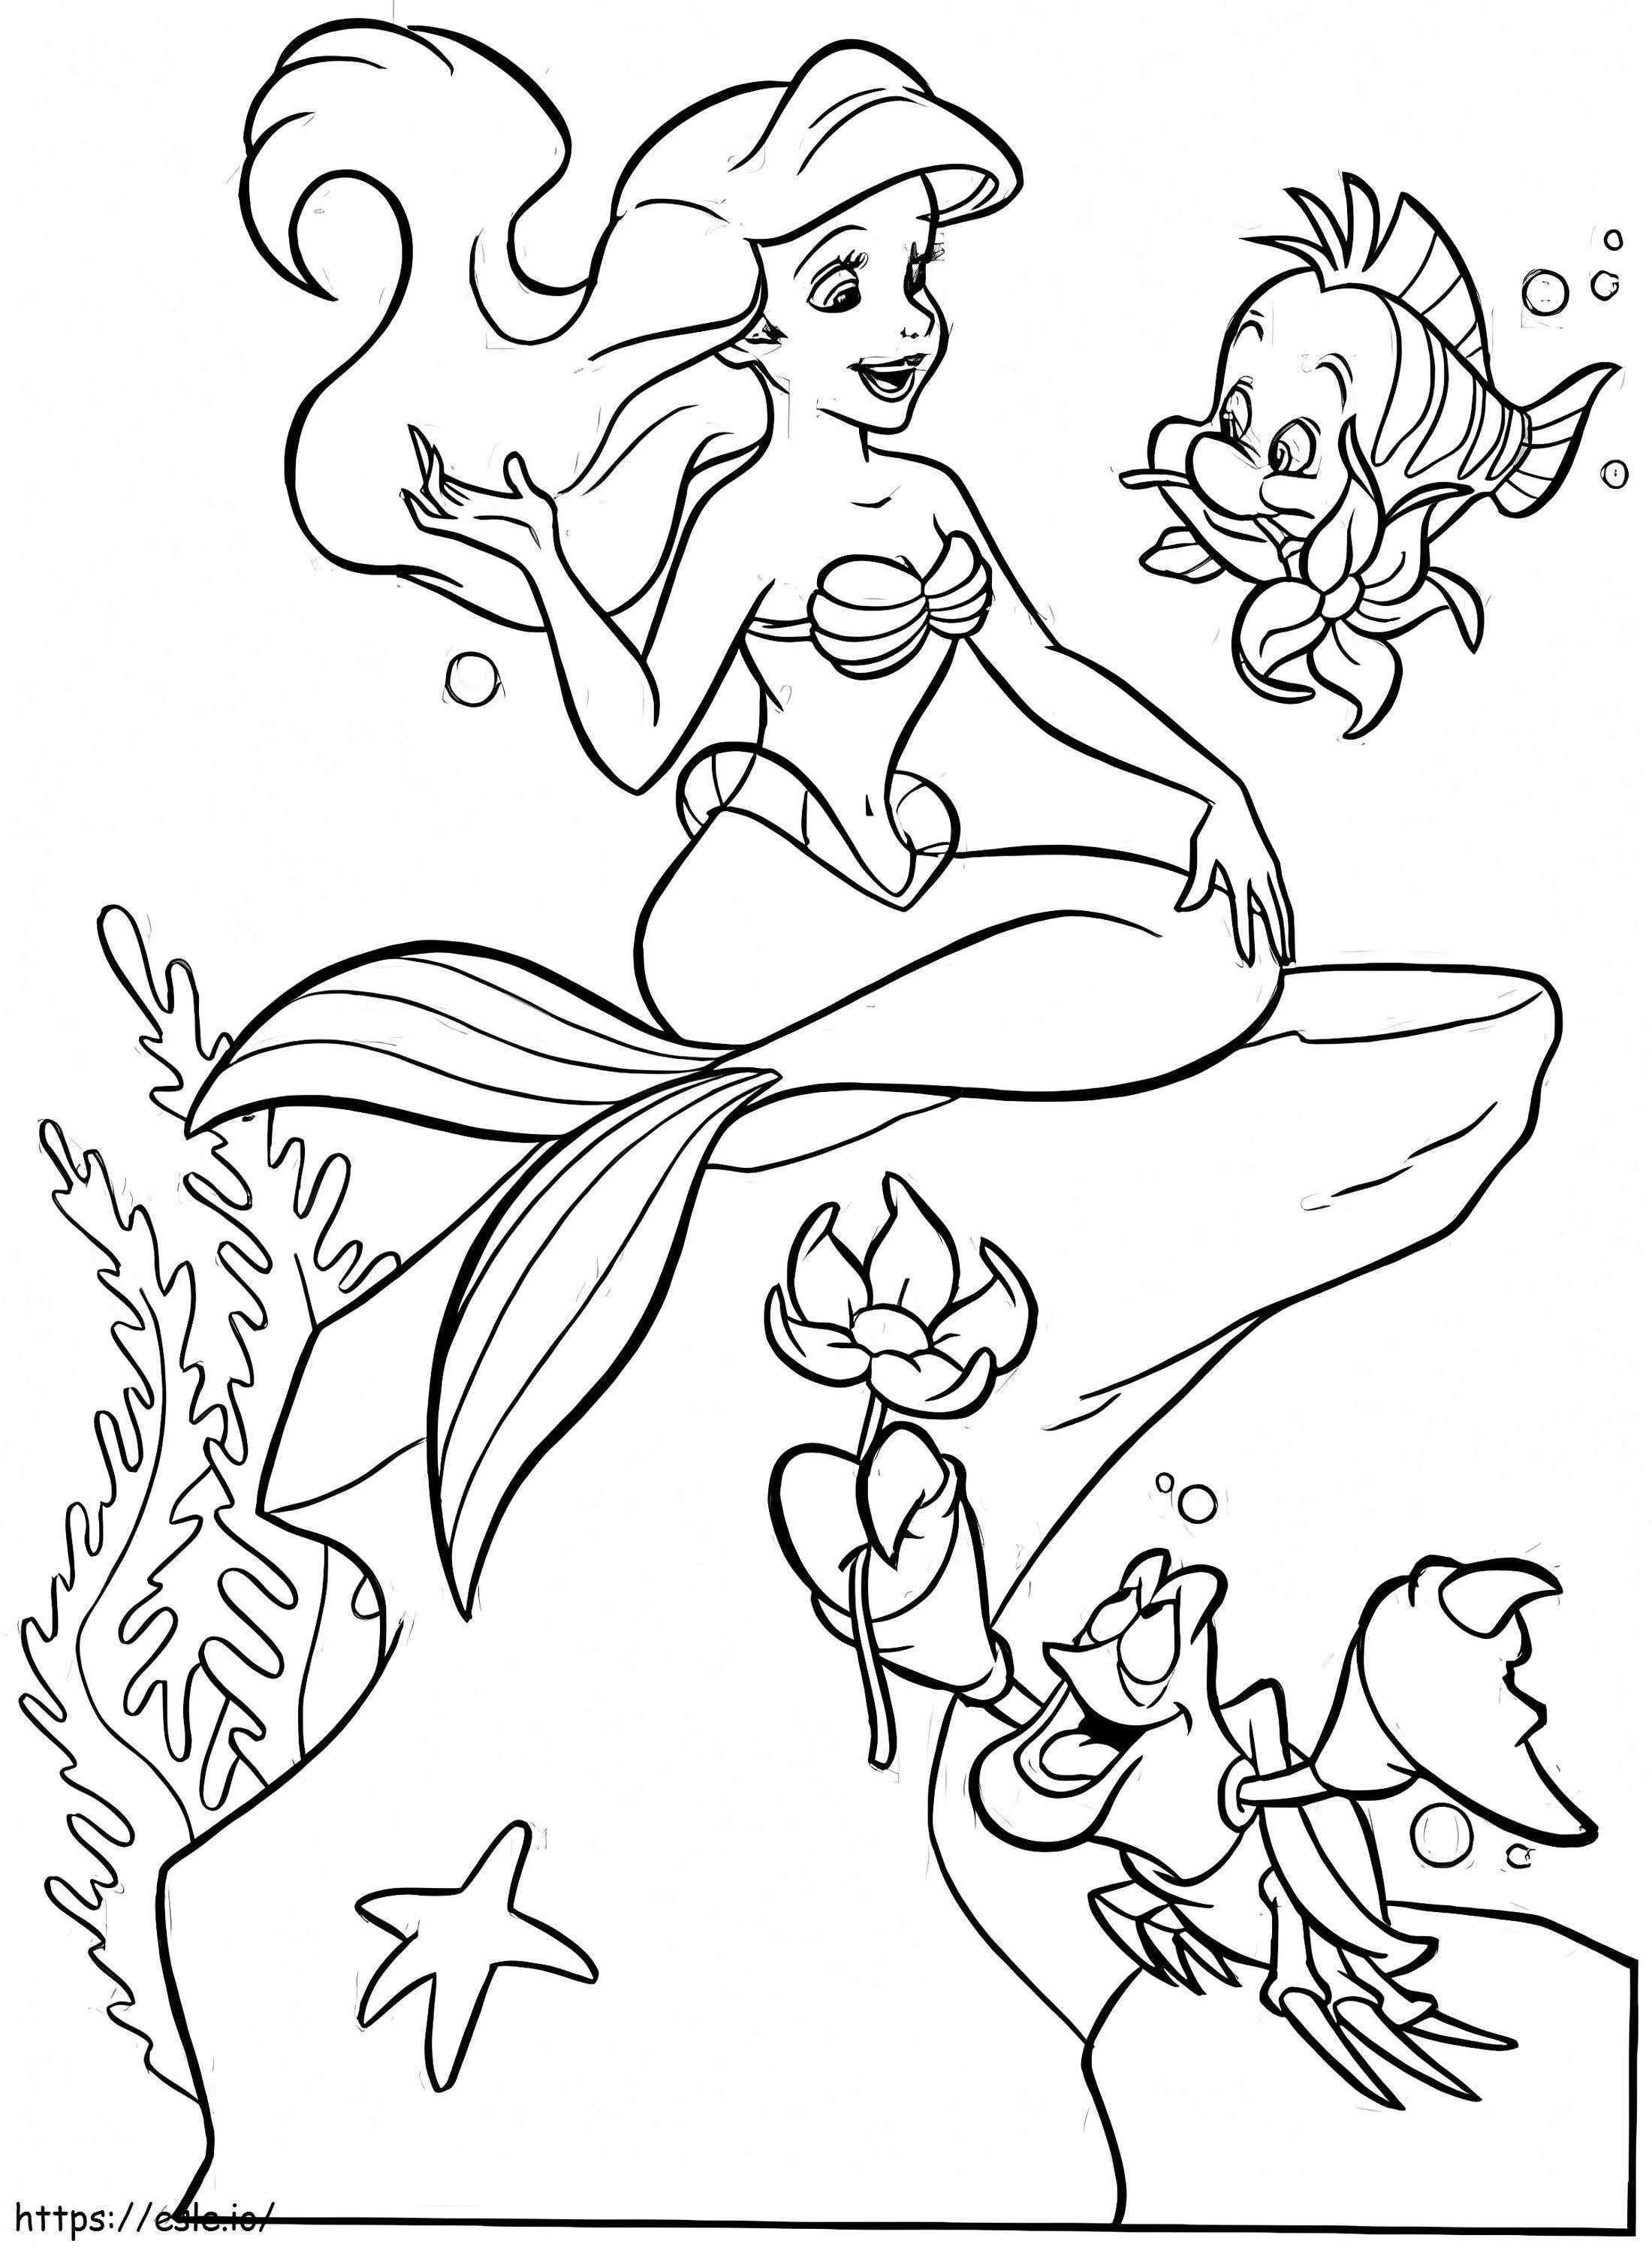 La Sirenita Ariel Y Sus Amigos para colorear